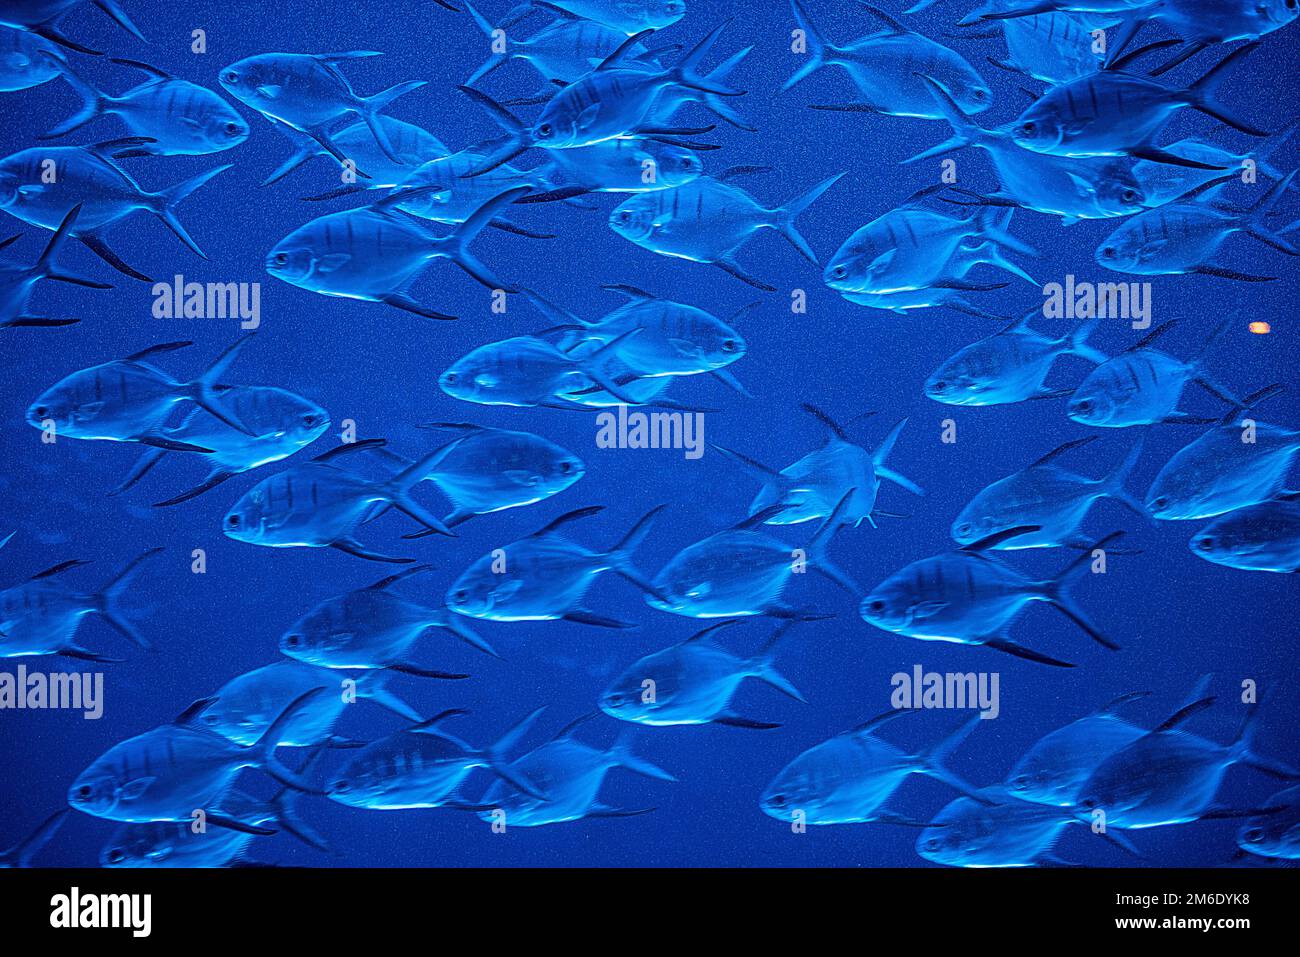 Fishes in aquarium Stock Photo